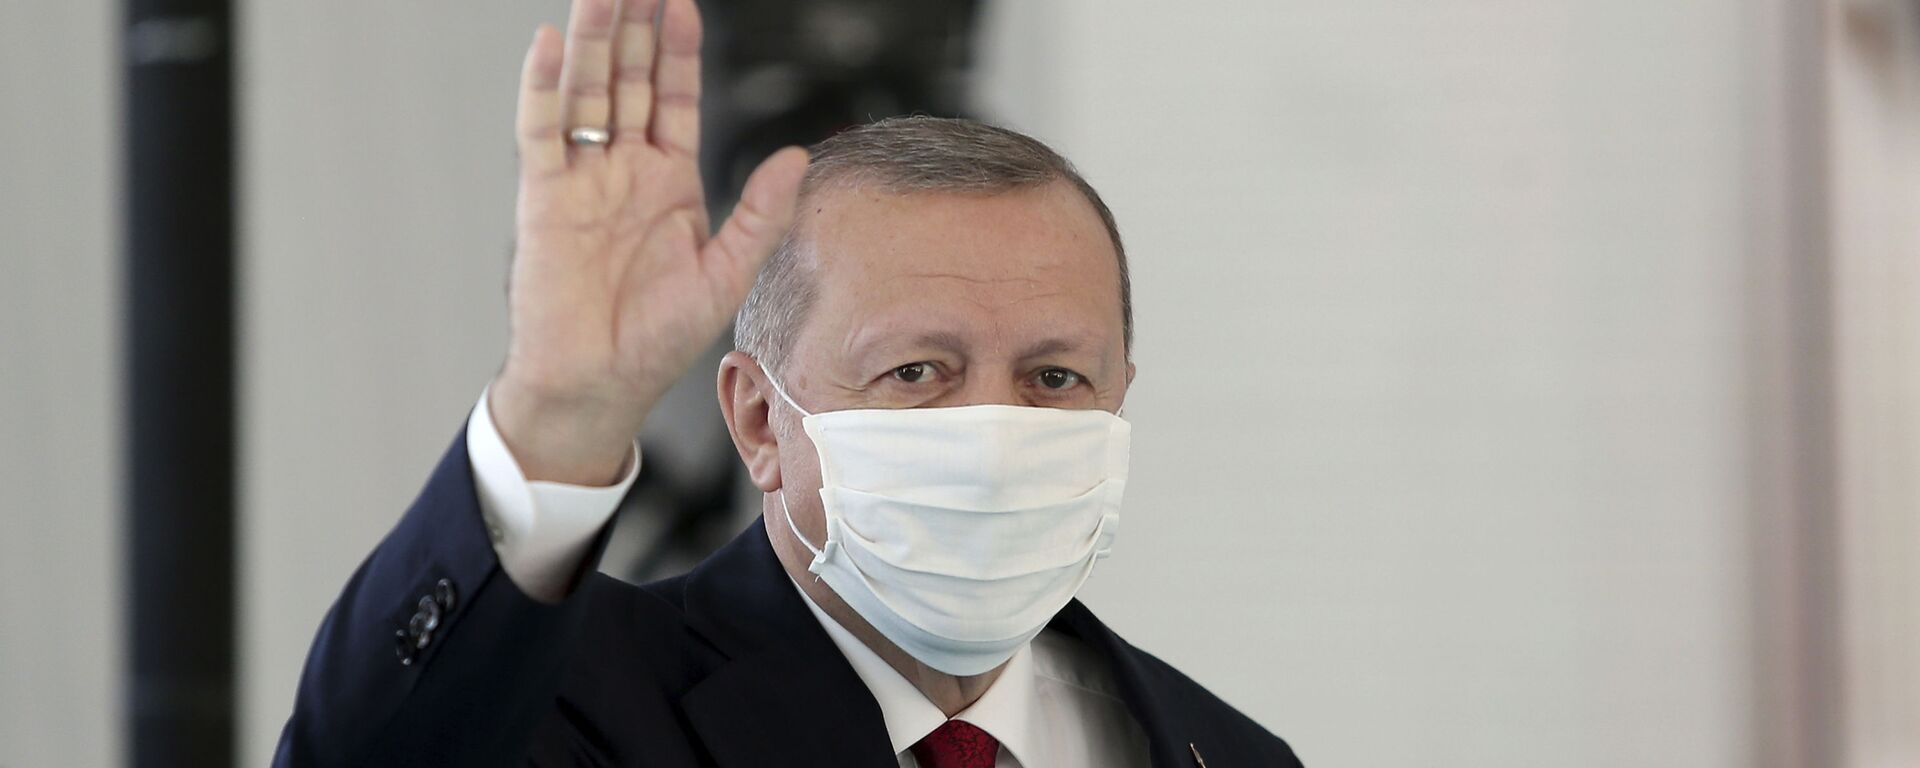 Президент Турции Реджеп Тайип Эрдоган в защитной медицинской маске в одном из госпиталей Стамбула - Sputnik Արմենիա, 1920, 19.05.2021